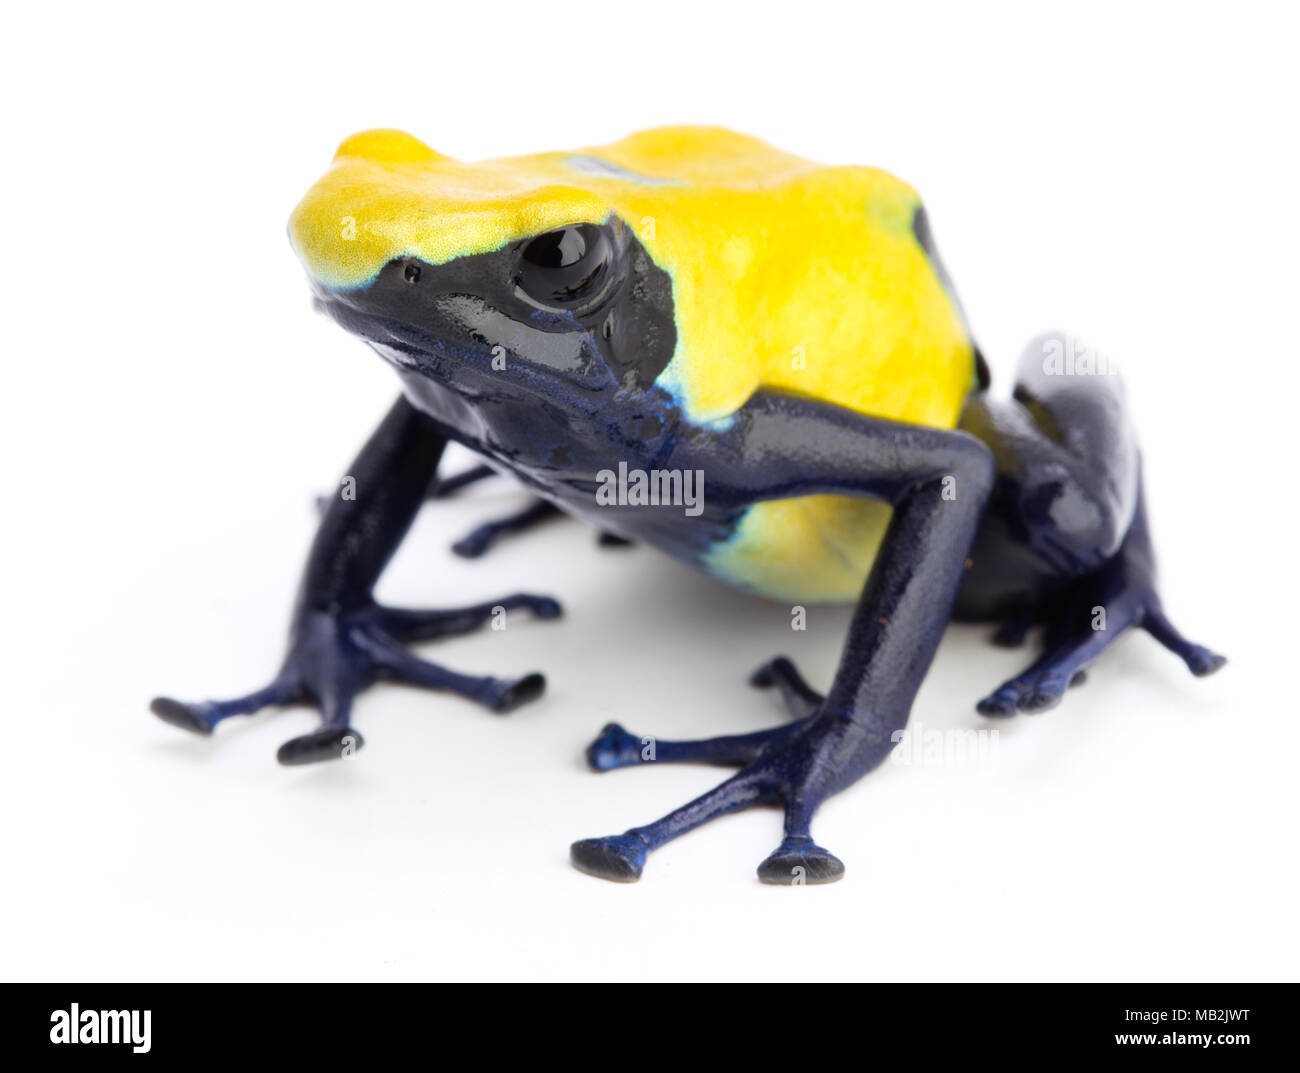 Gelb Blau poison dart Frog, Dendrobates tinctorius Citronella. Ein giftiges Tier aus den tropischen Regenwald des Amazonas. Stockfoto